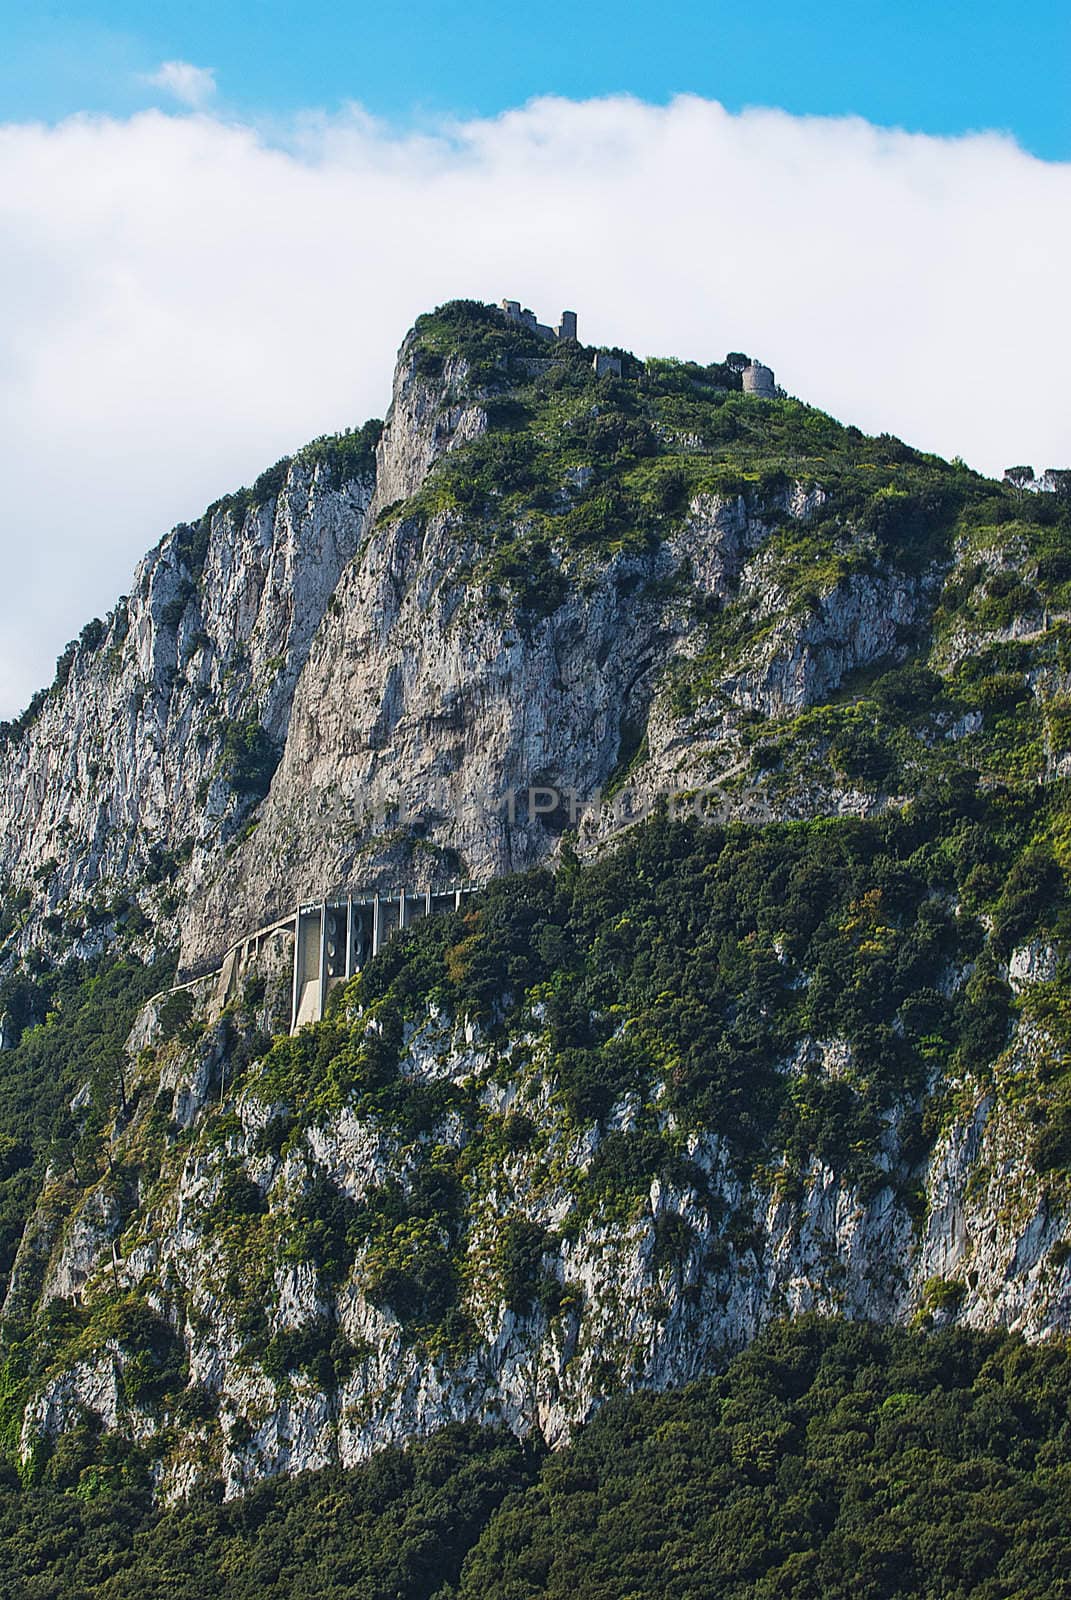 perilous bridge around rugged cliffs capri italy